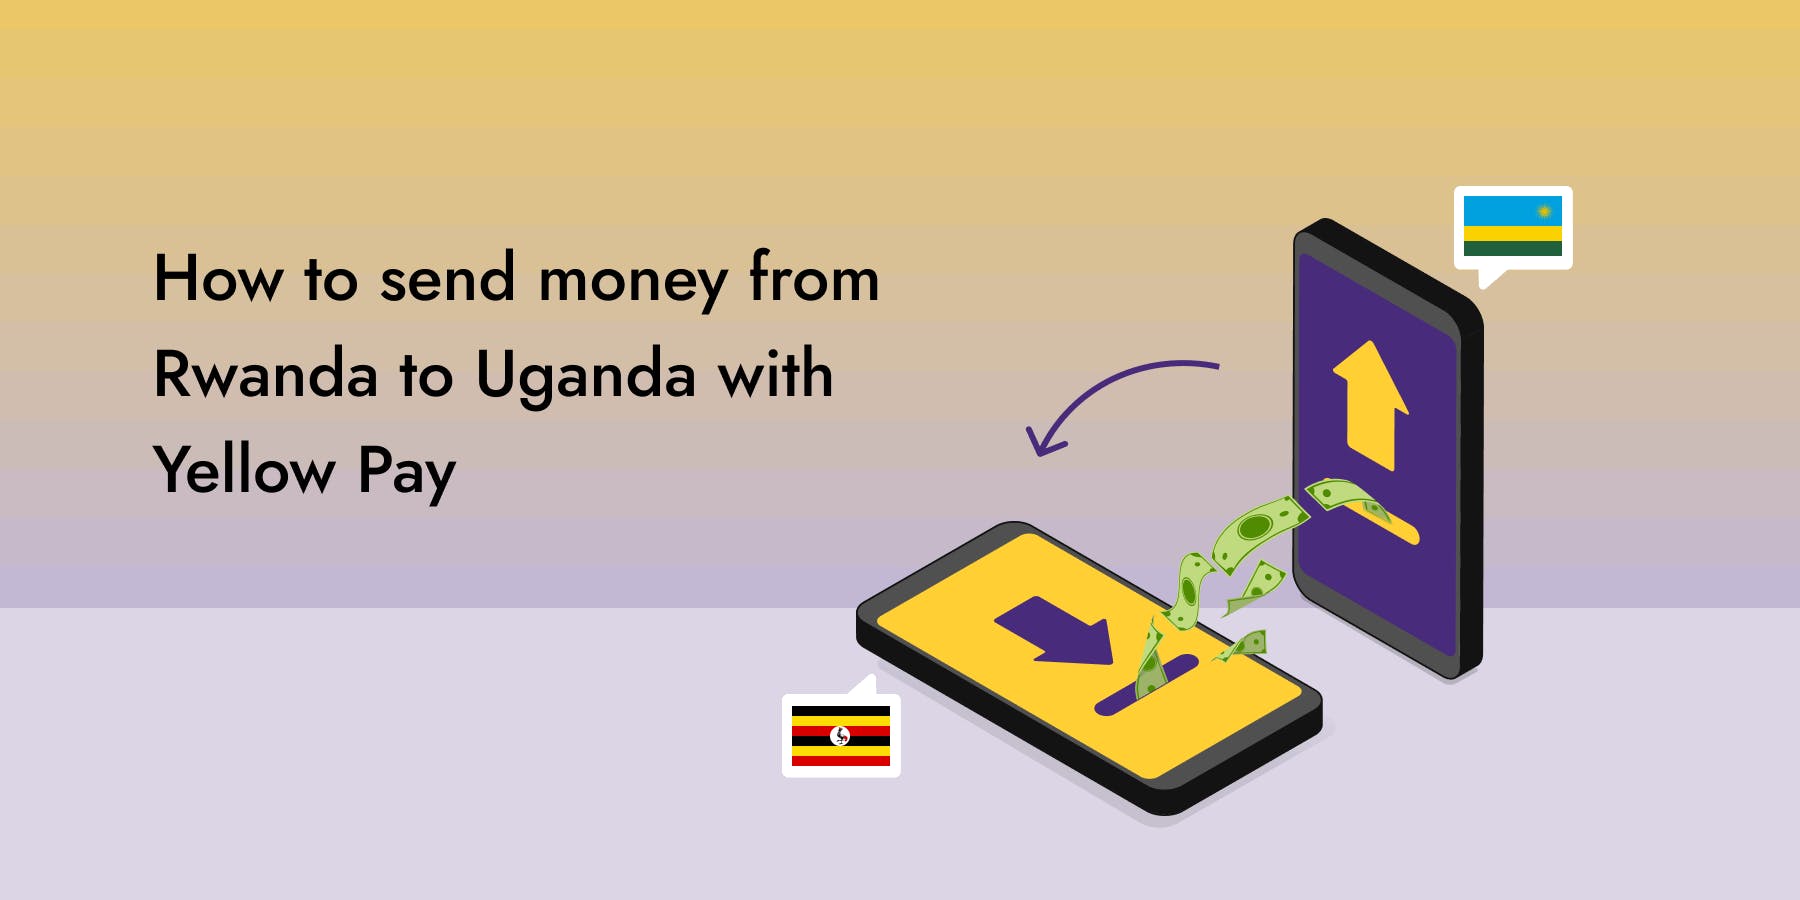 How to Send Money from Rwanda to Uganda